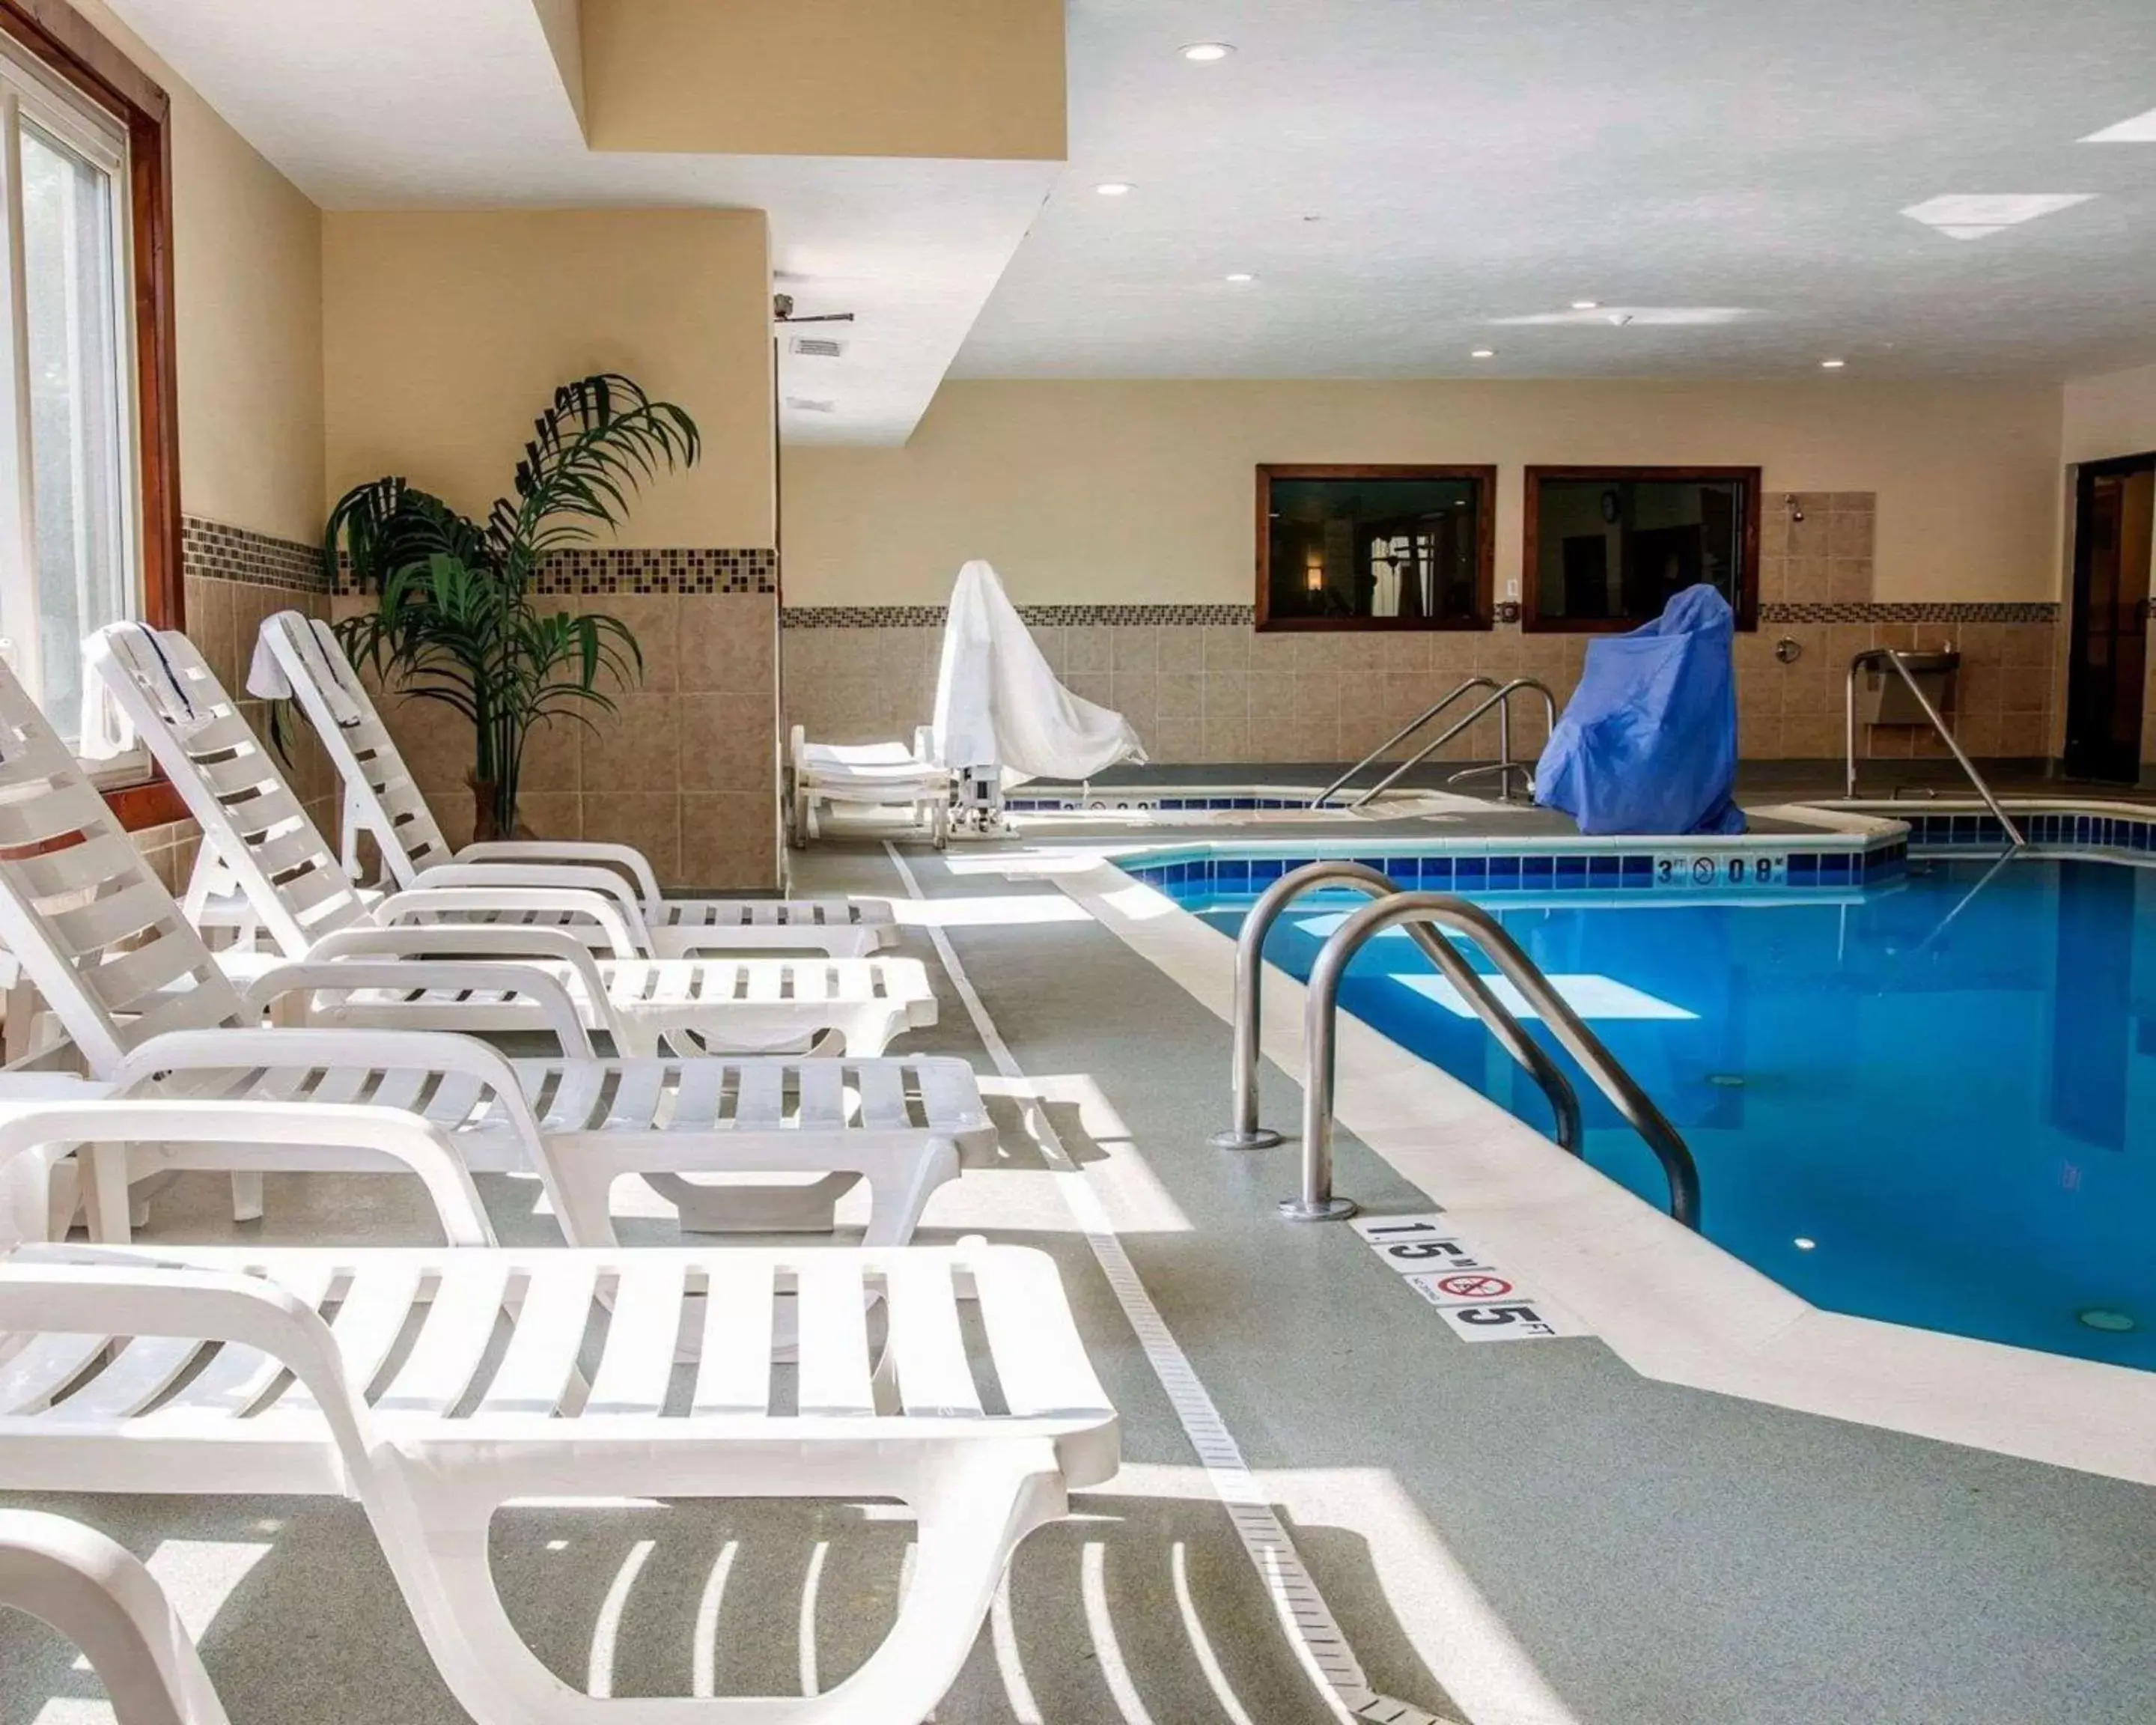 On site, Swimming Pool in Comfort Suites Benton Harbor - St. Joseph